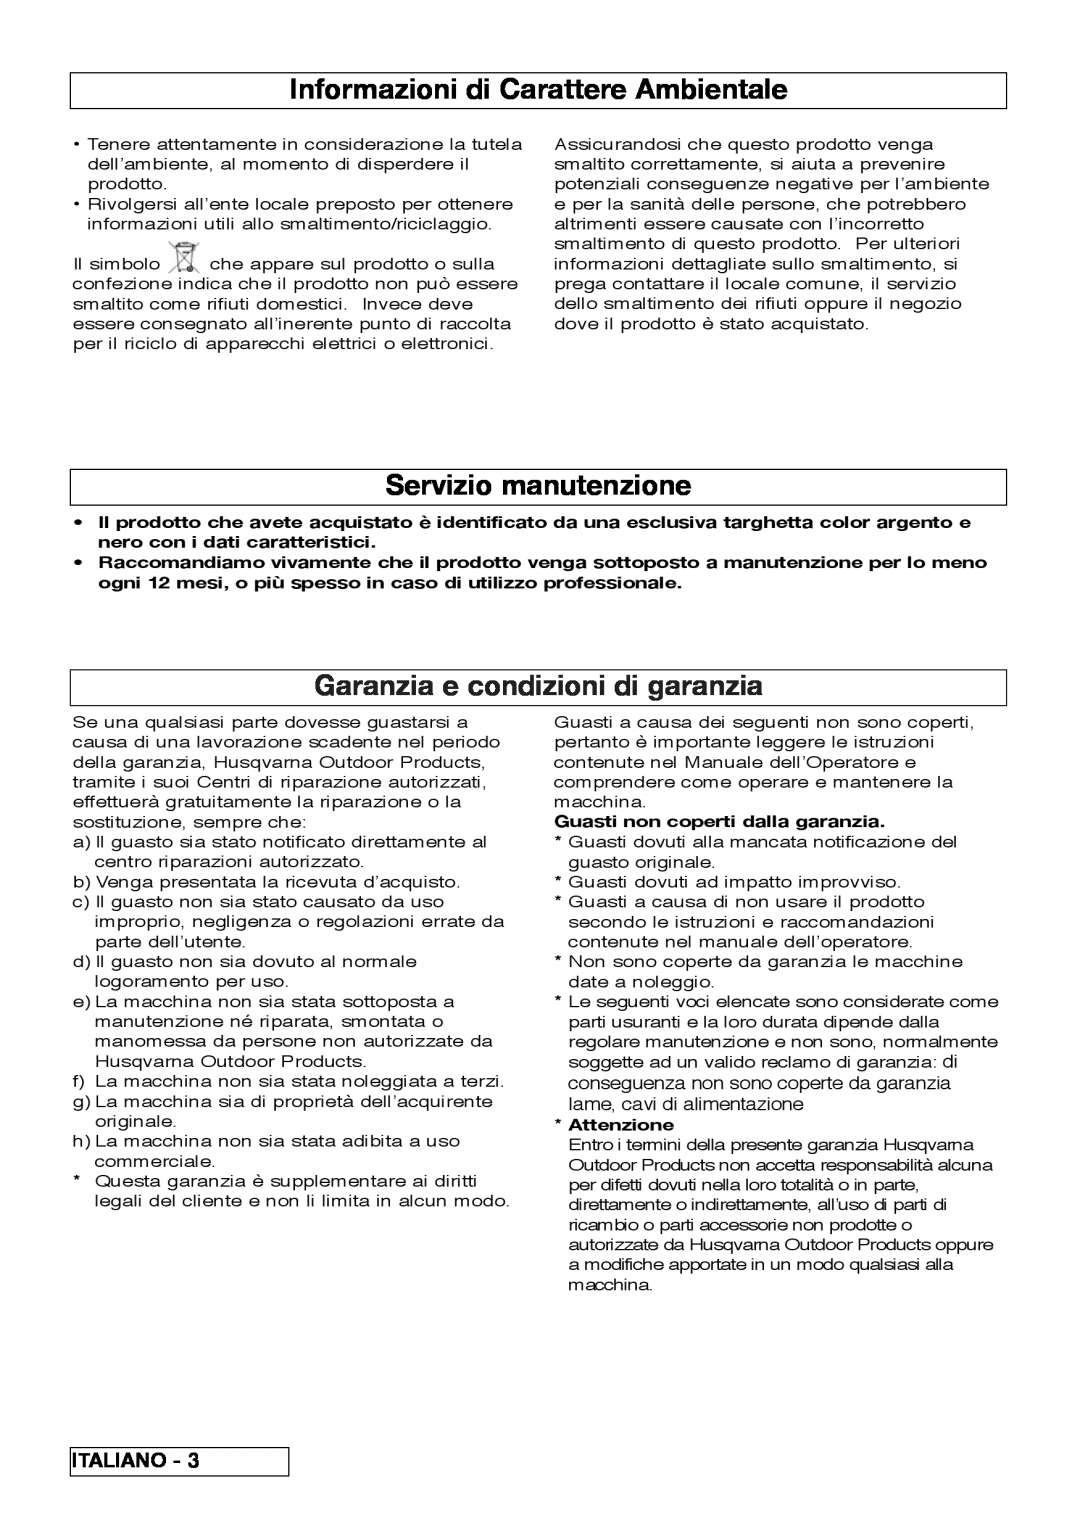 Flymo VM032 manual Informazioni di Carattere Ambientale, Servizio manutenzione, Garanzia e condizioni di garanzia, Italiano 